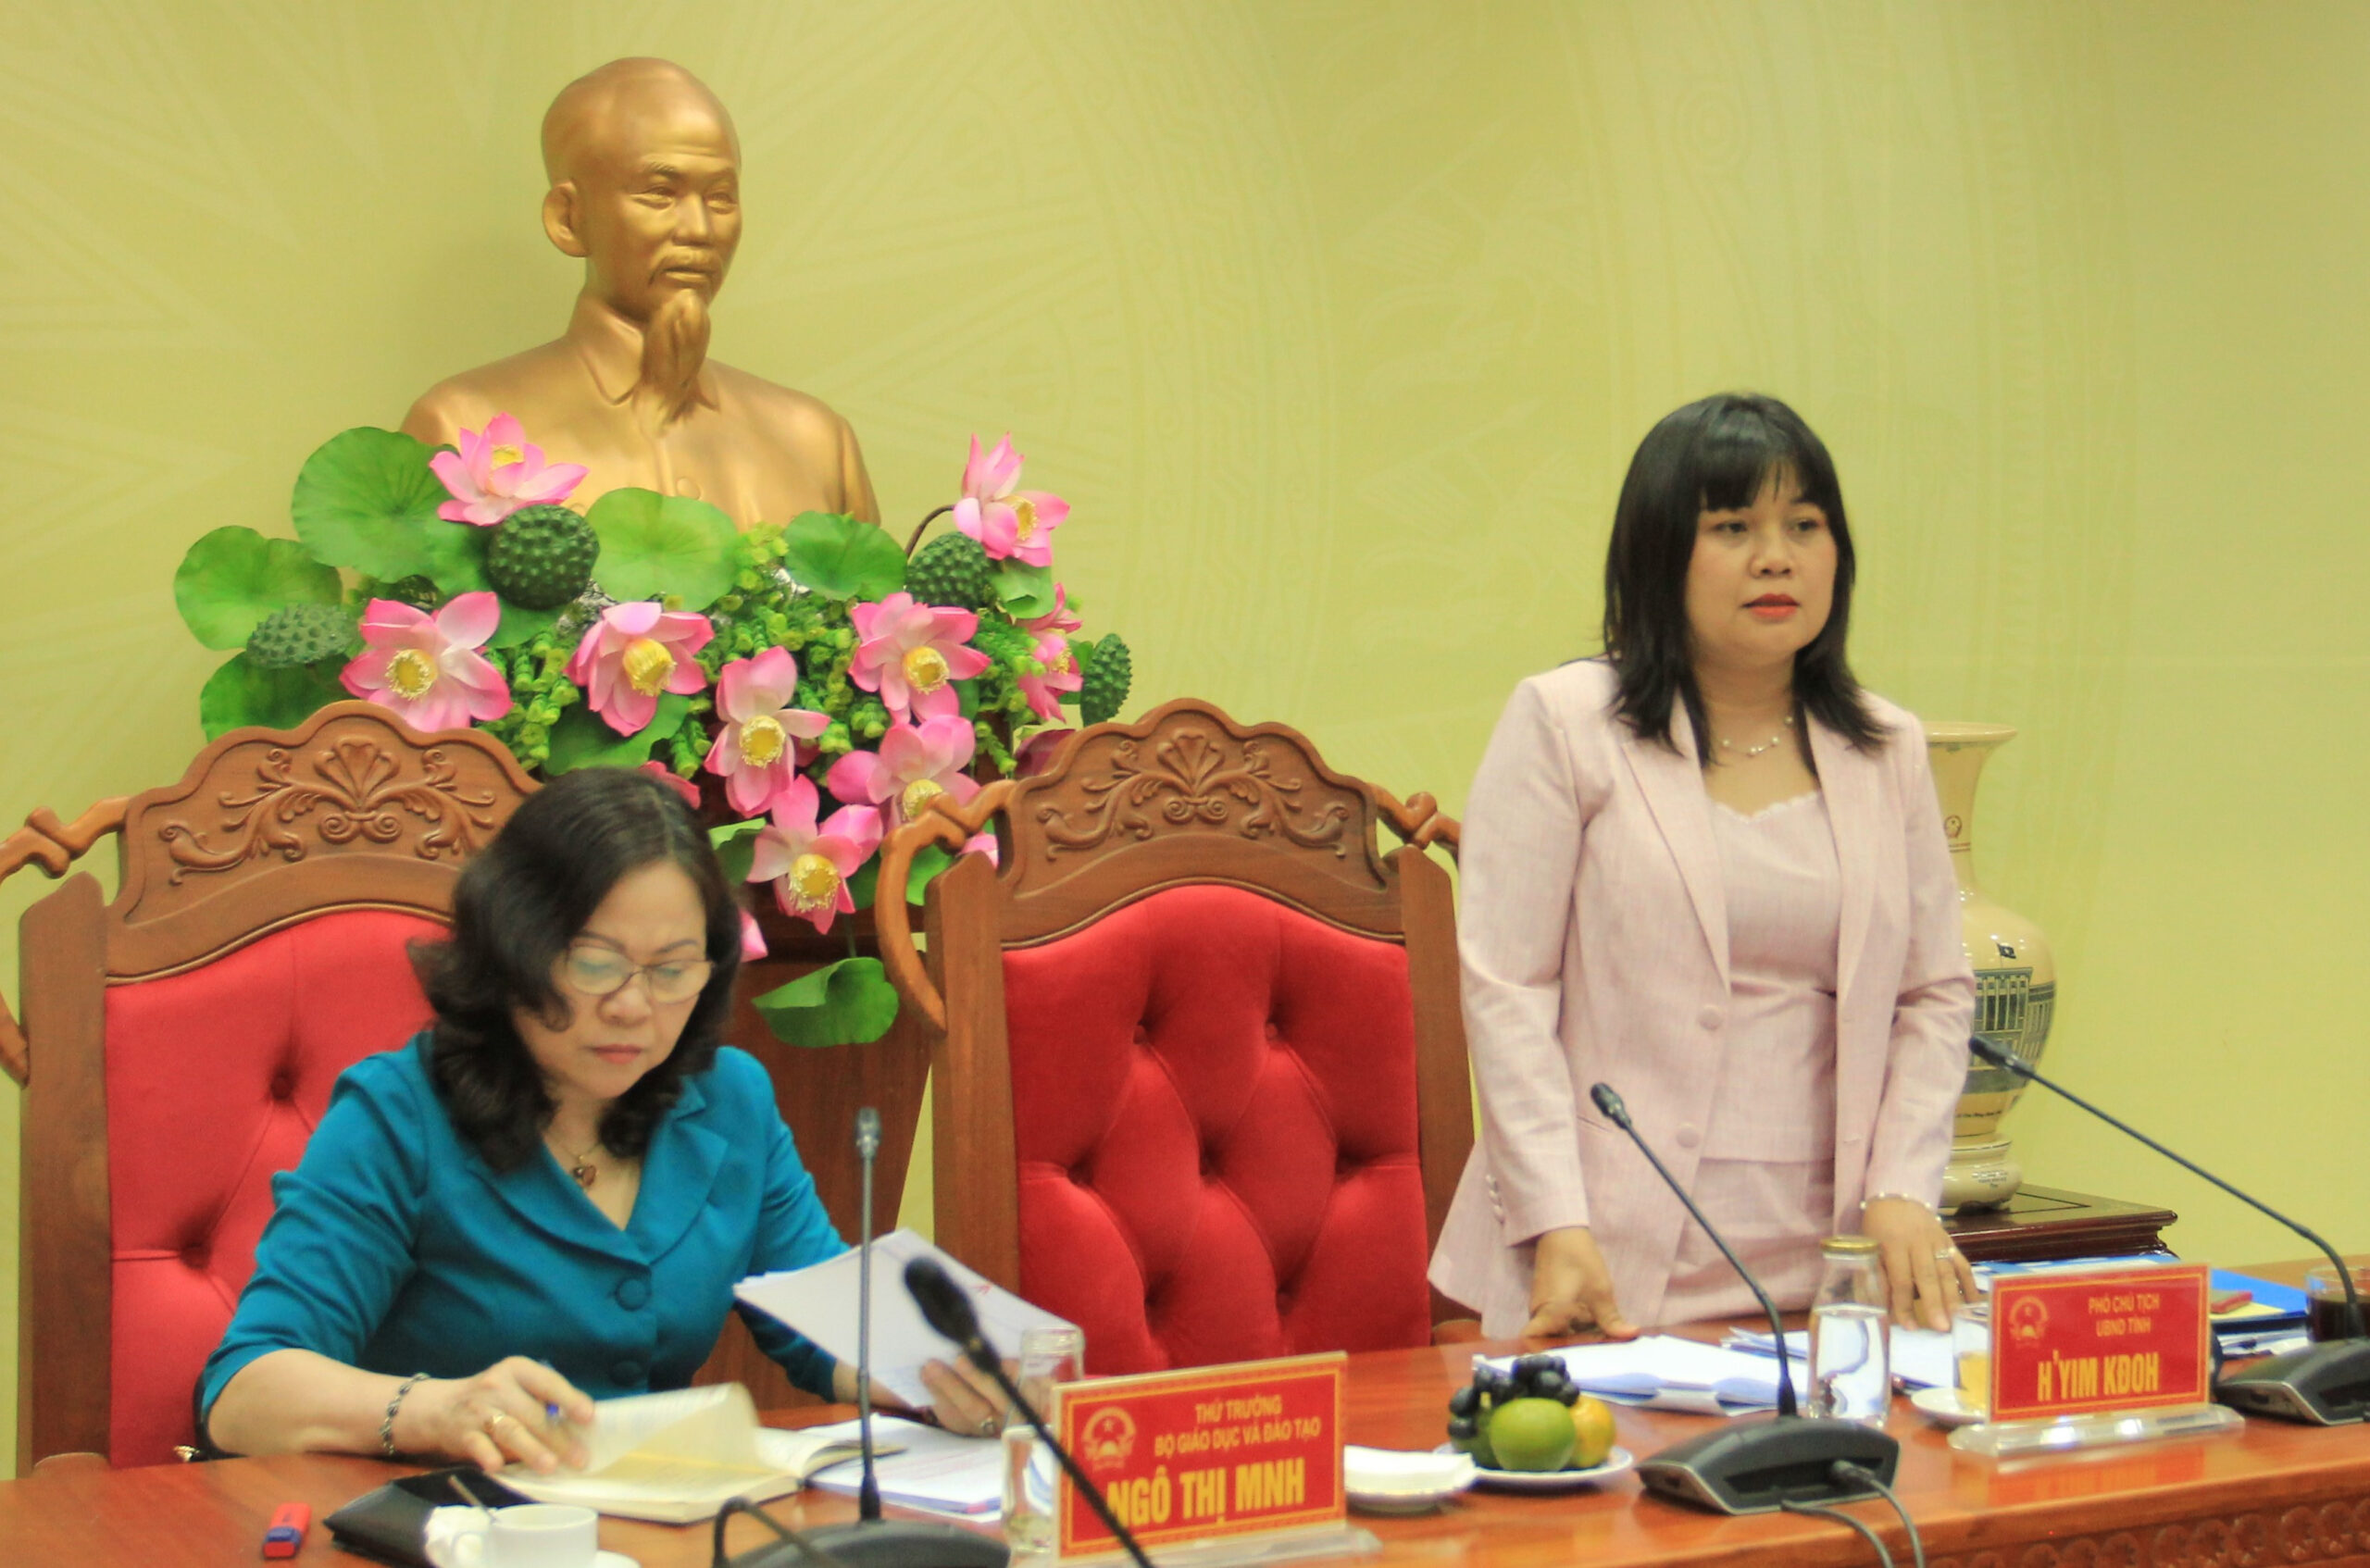 Thứ trưởng Ngô Thị Minh làm việc với UBND tỉnh Đắk Lắk về công tác giáo dục